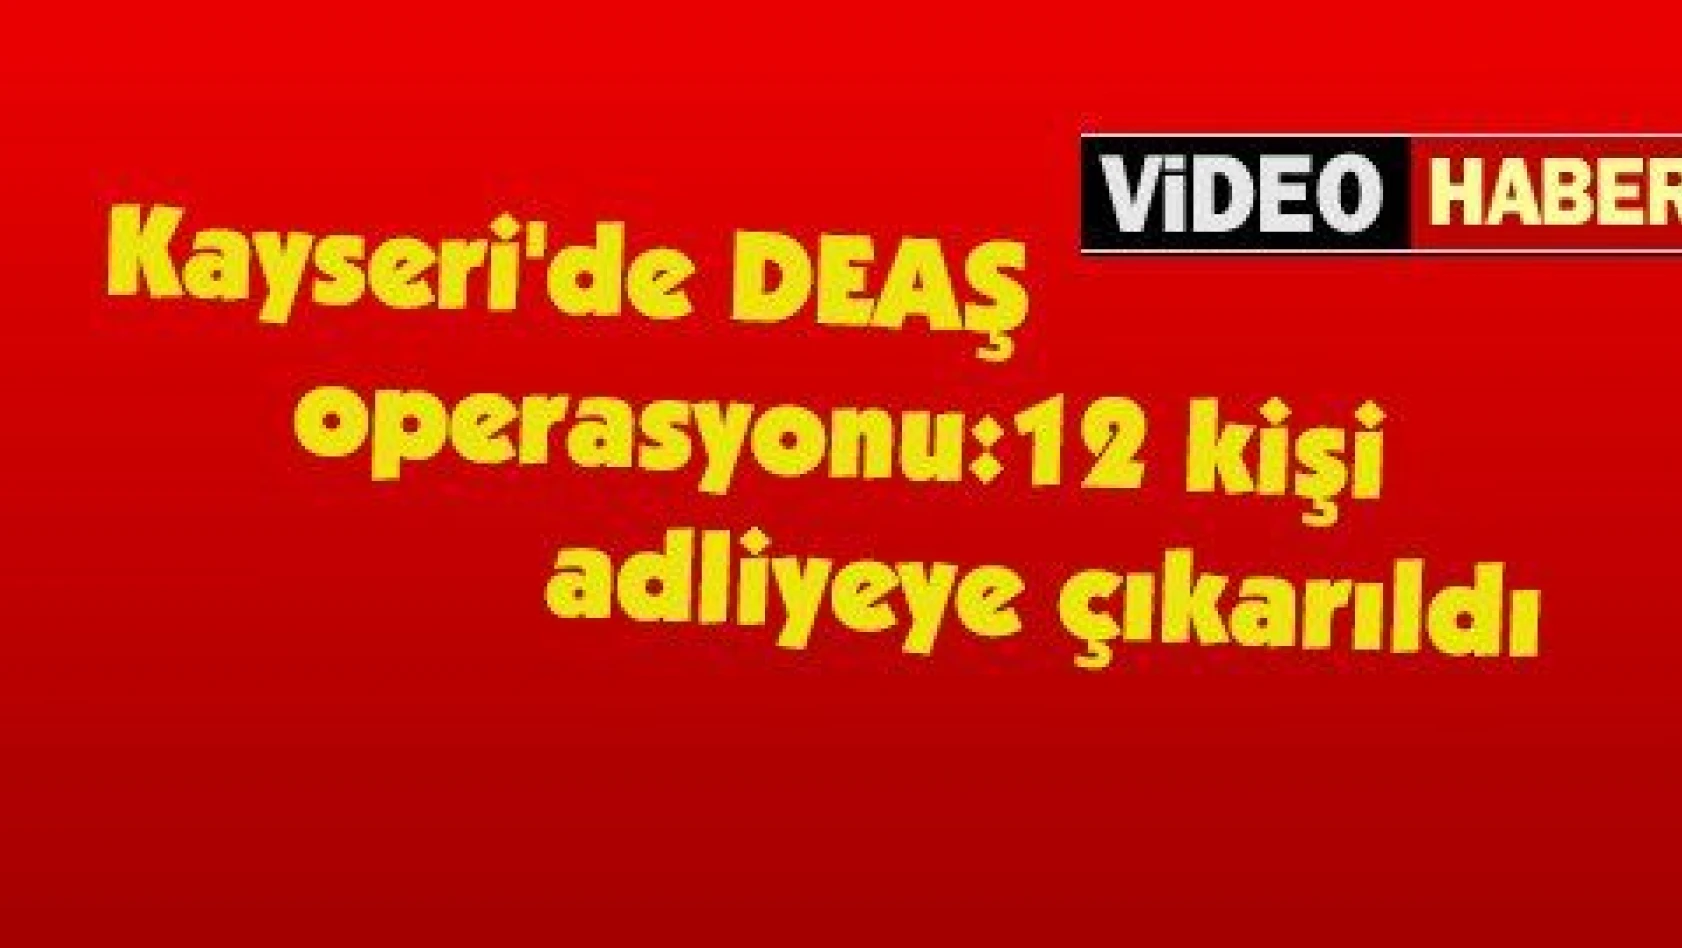 Kayseri'deki DEAŞ operasyonu:12 kişi adliyeye çıkarıldı